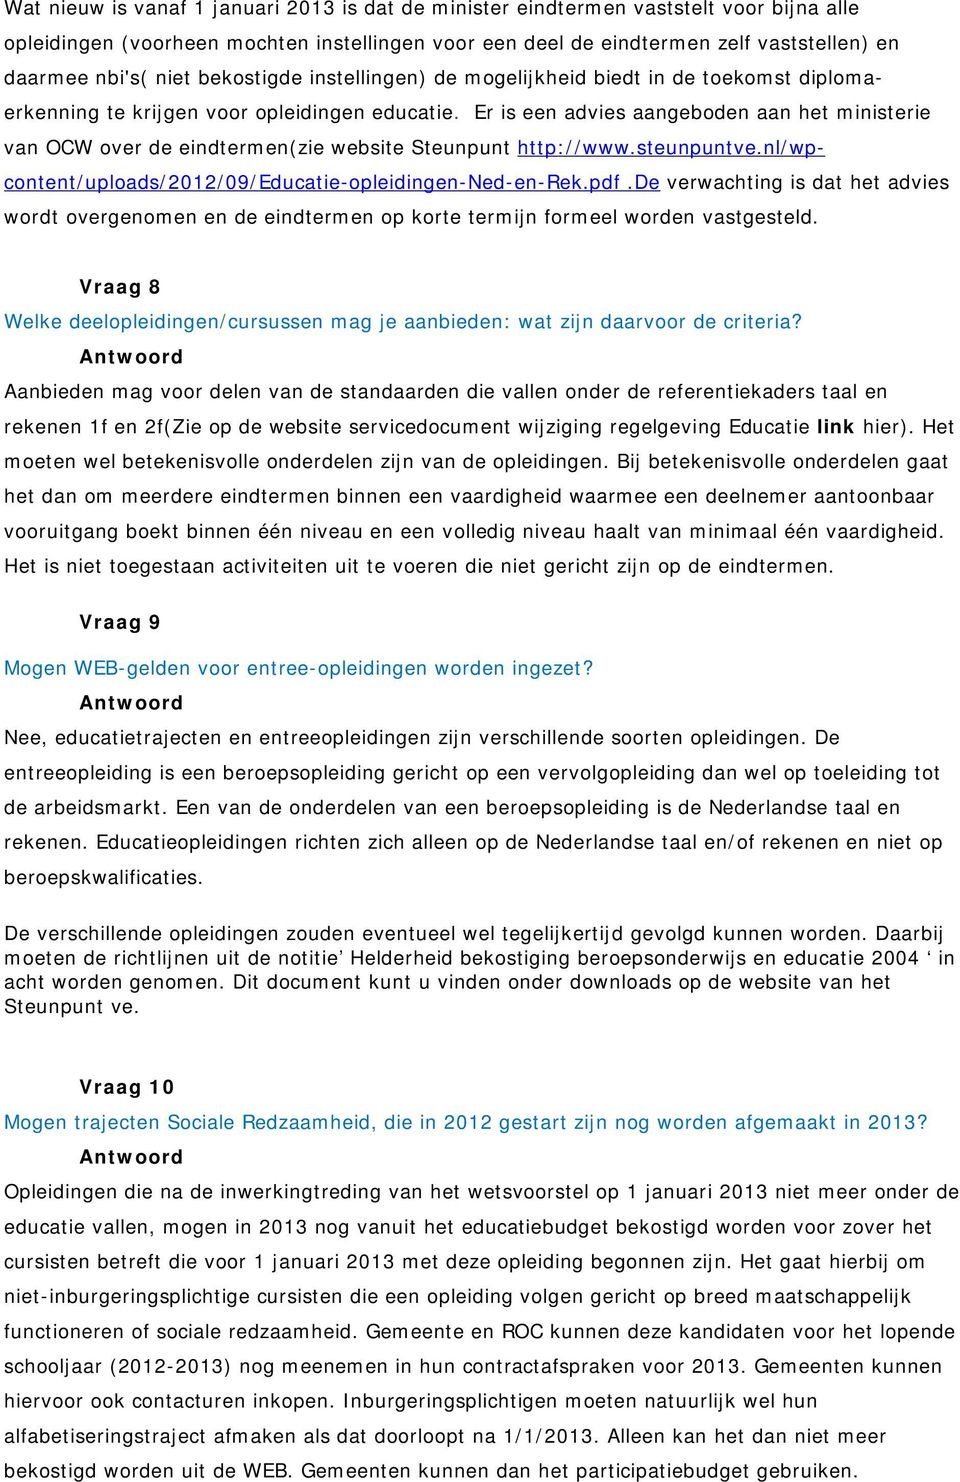 Er is een advies aangeboden aan het ministerie van OCW over de eindtermen(zie website Steunpunt http://www.steunpuntve.nl/wpcontent/uploads/2012/09/educatie-opleidingen-ned-en-rek.pdf.